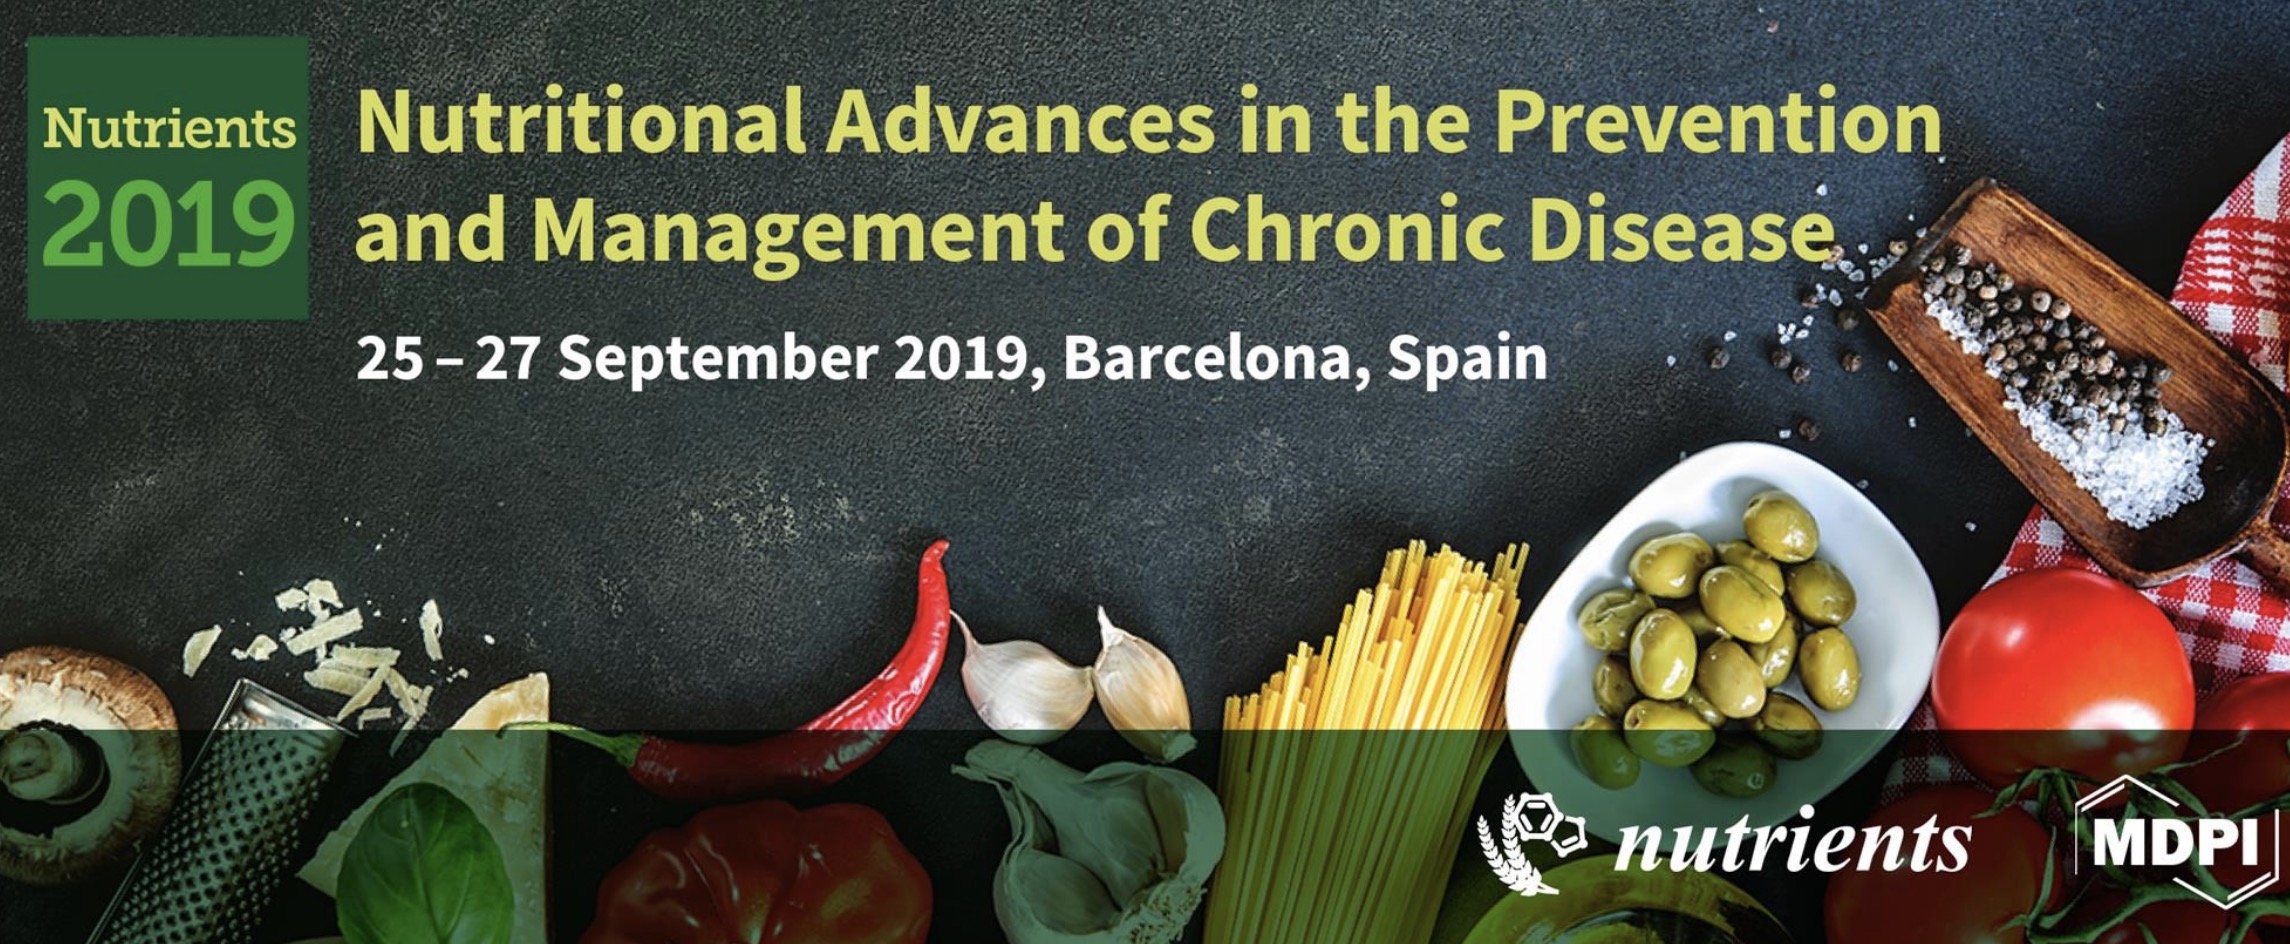 La primera conferencia internacional Nutrients 2019, 25-27 setembre a Barcelona